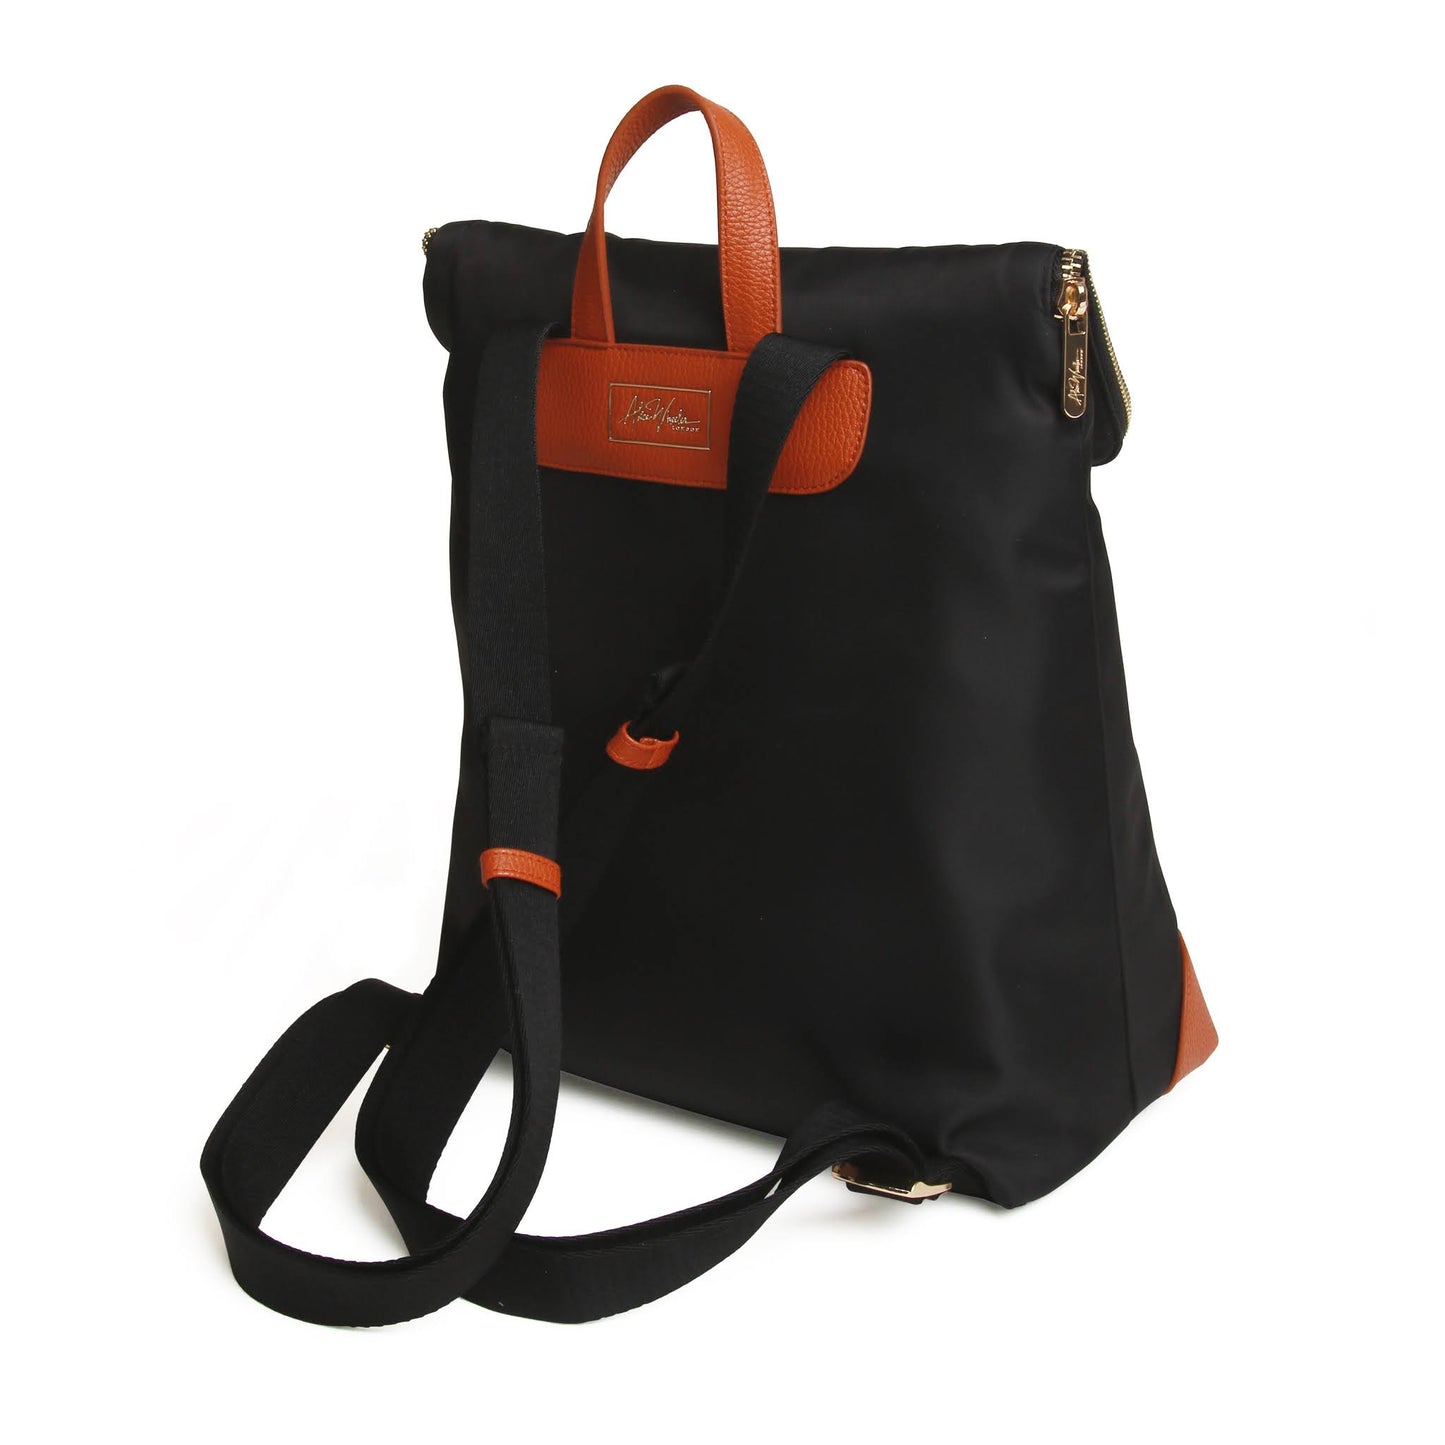 Marlow backpack - Black